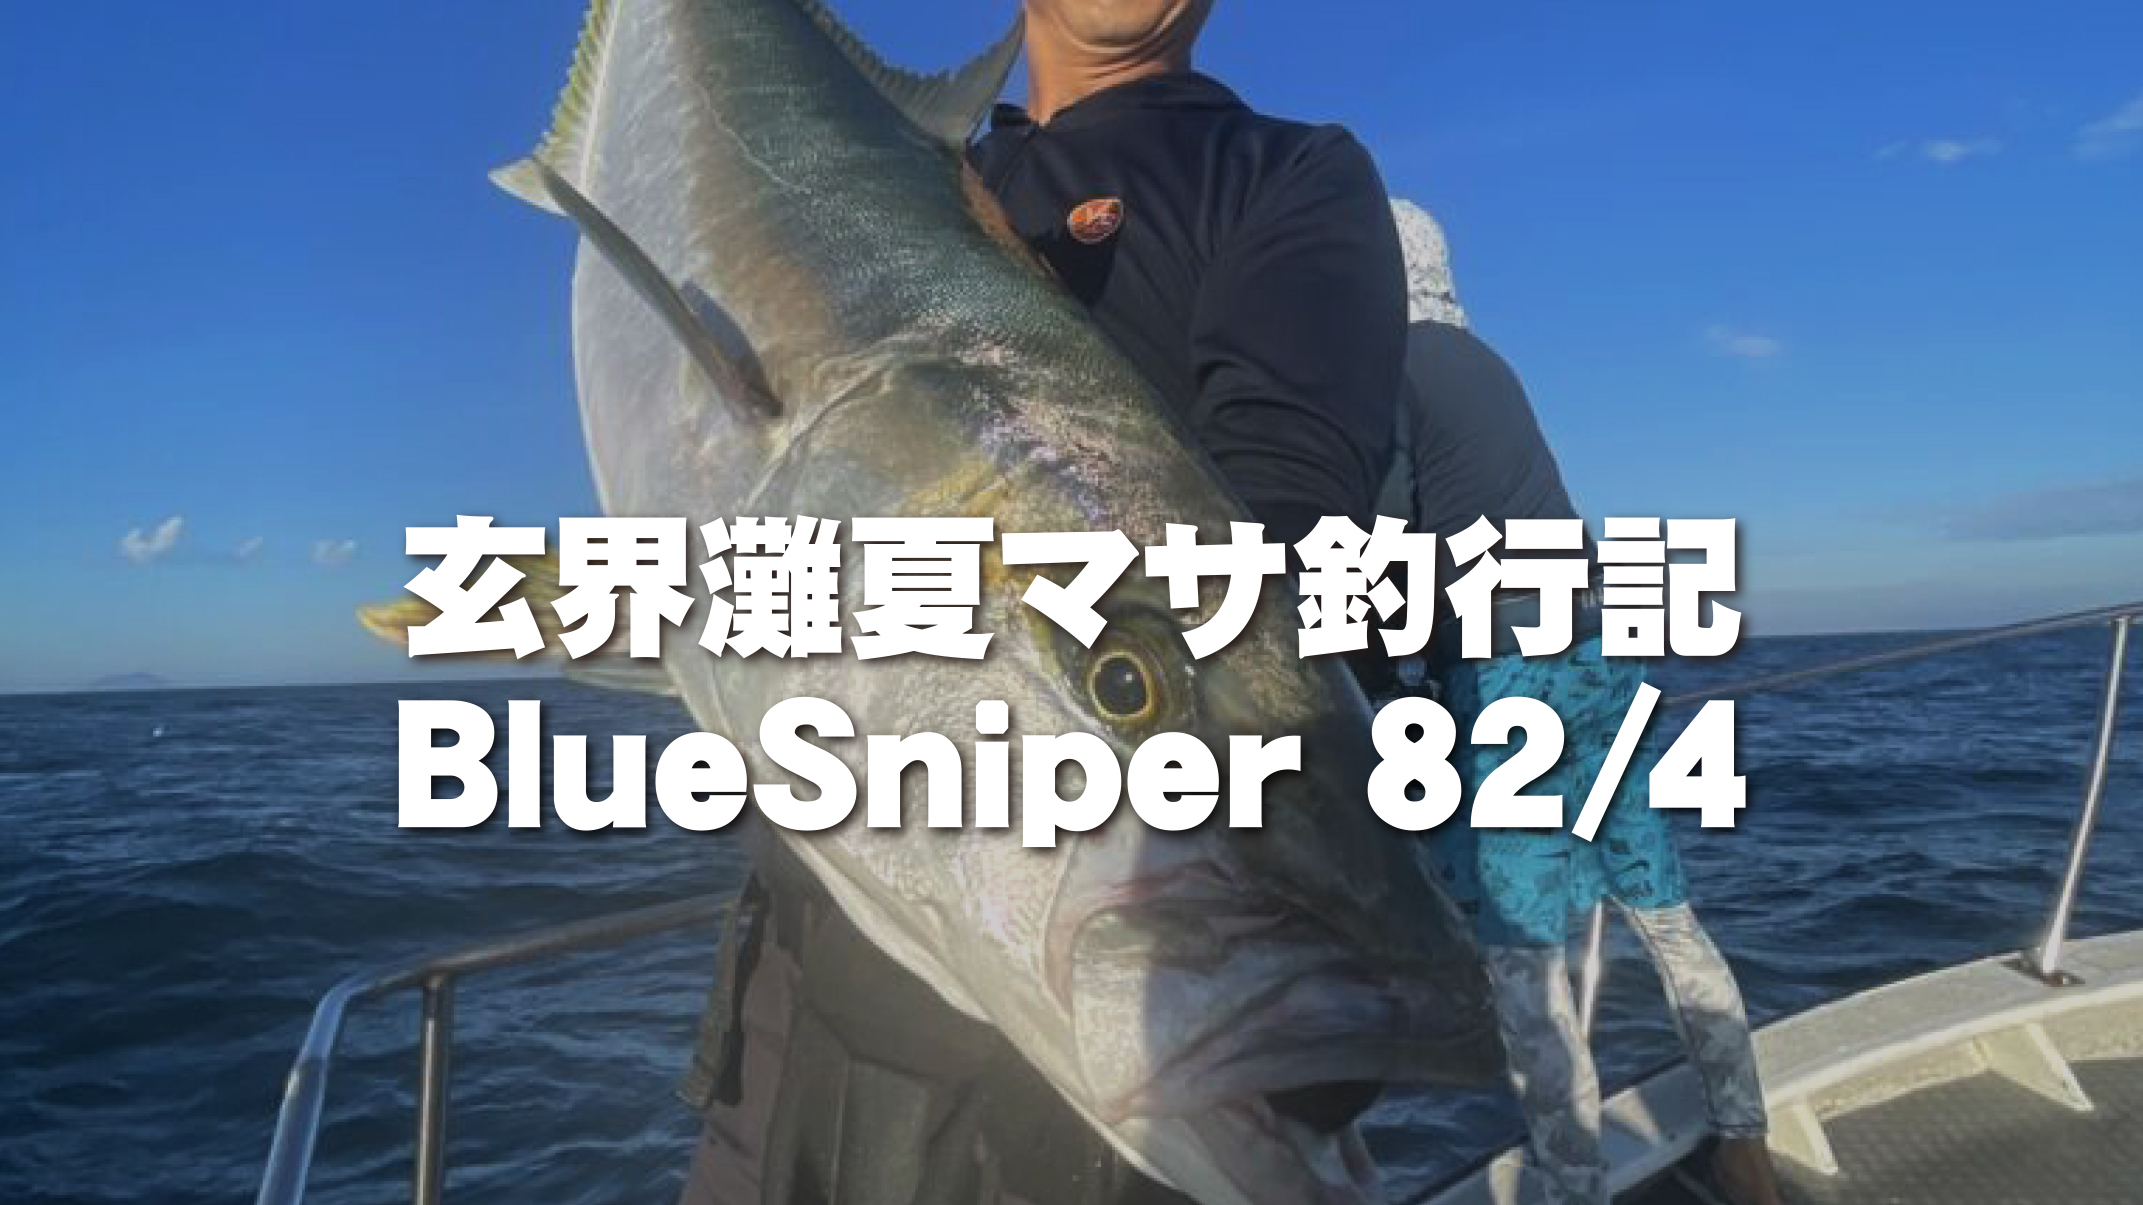 【フィールドスタッフレポート】 玄界灘夏マサ釣行記 BlueSniper 82/4